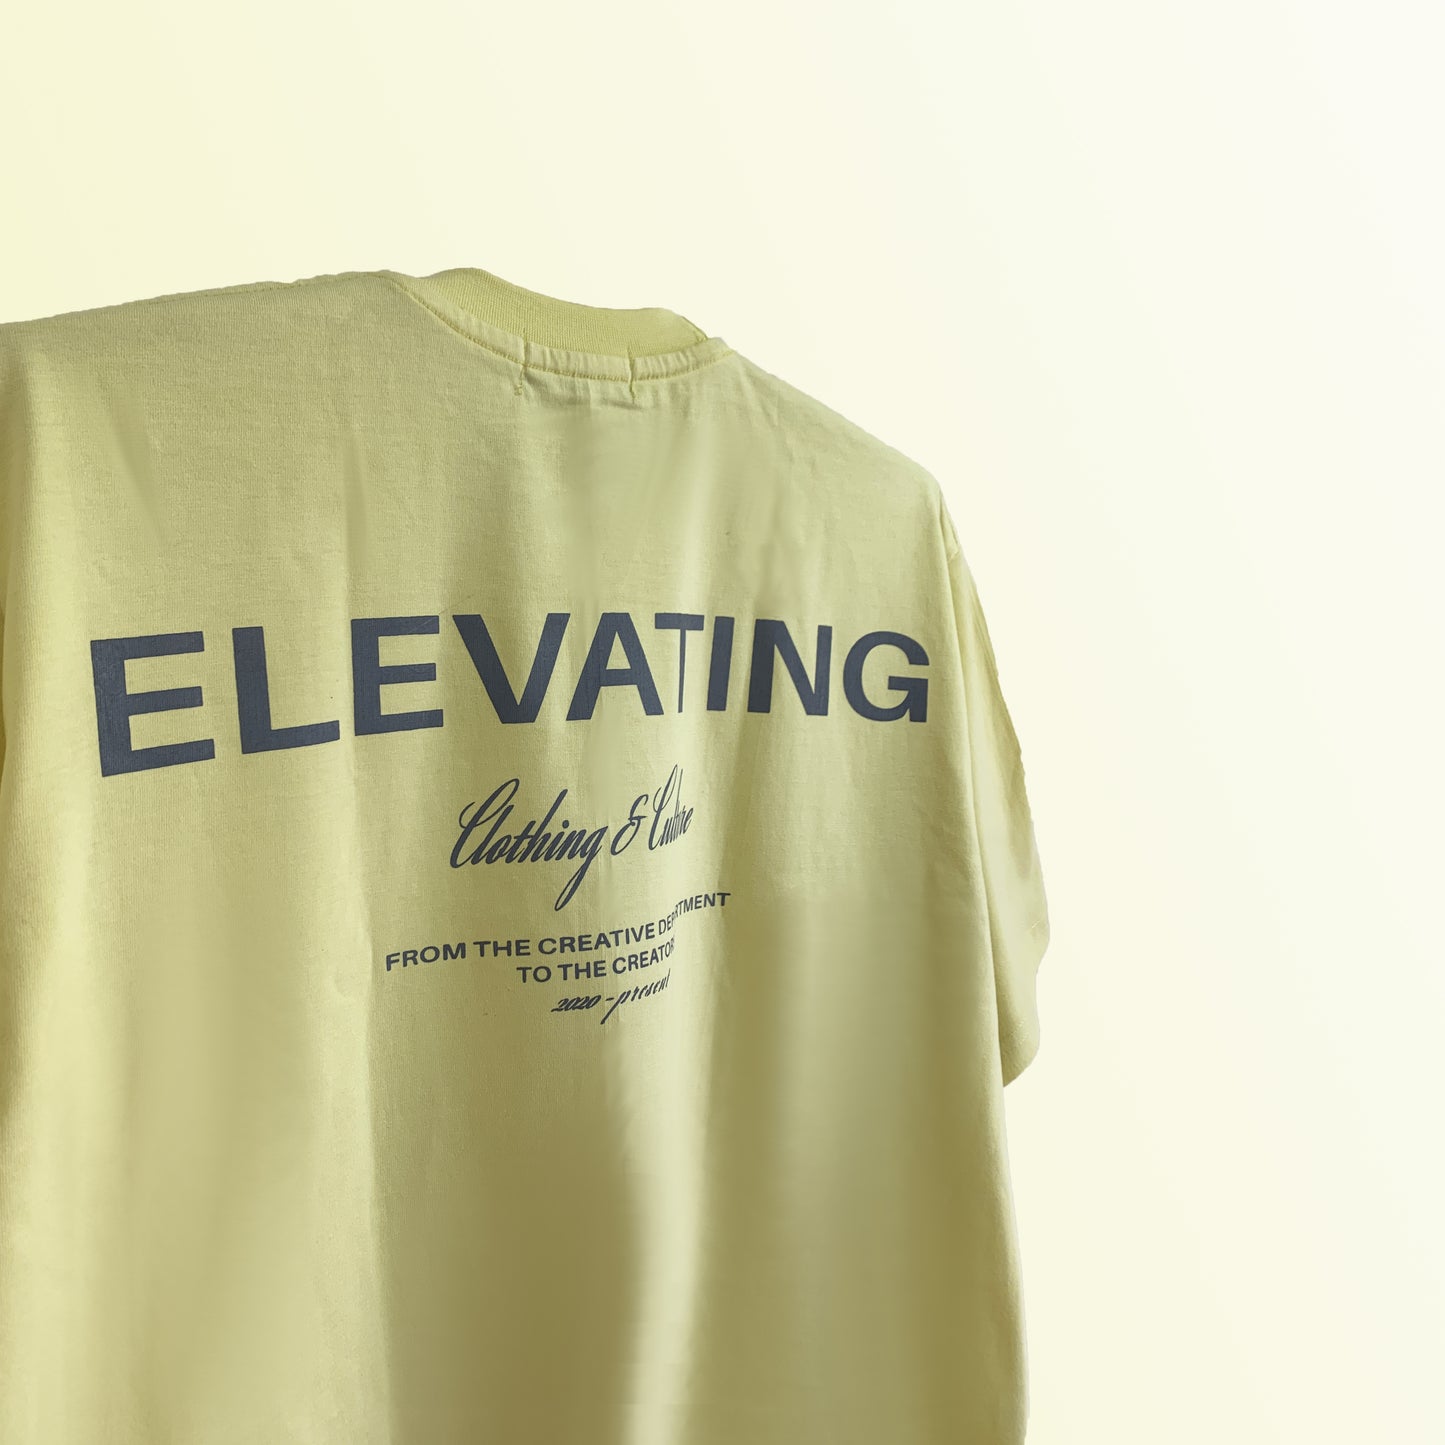 Elevating x Yellow- Tshirt